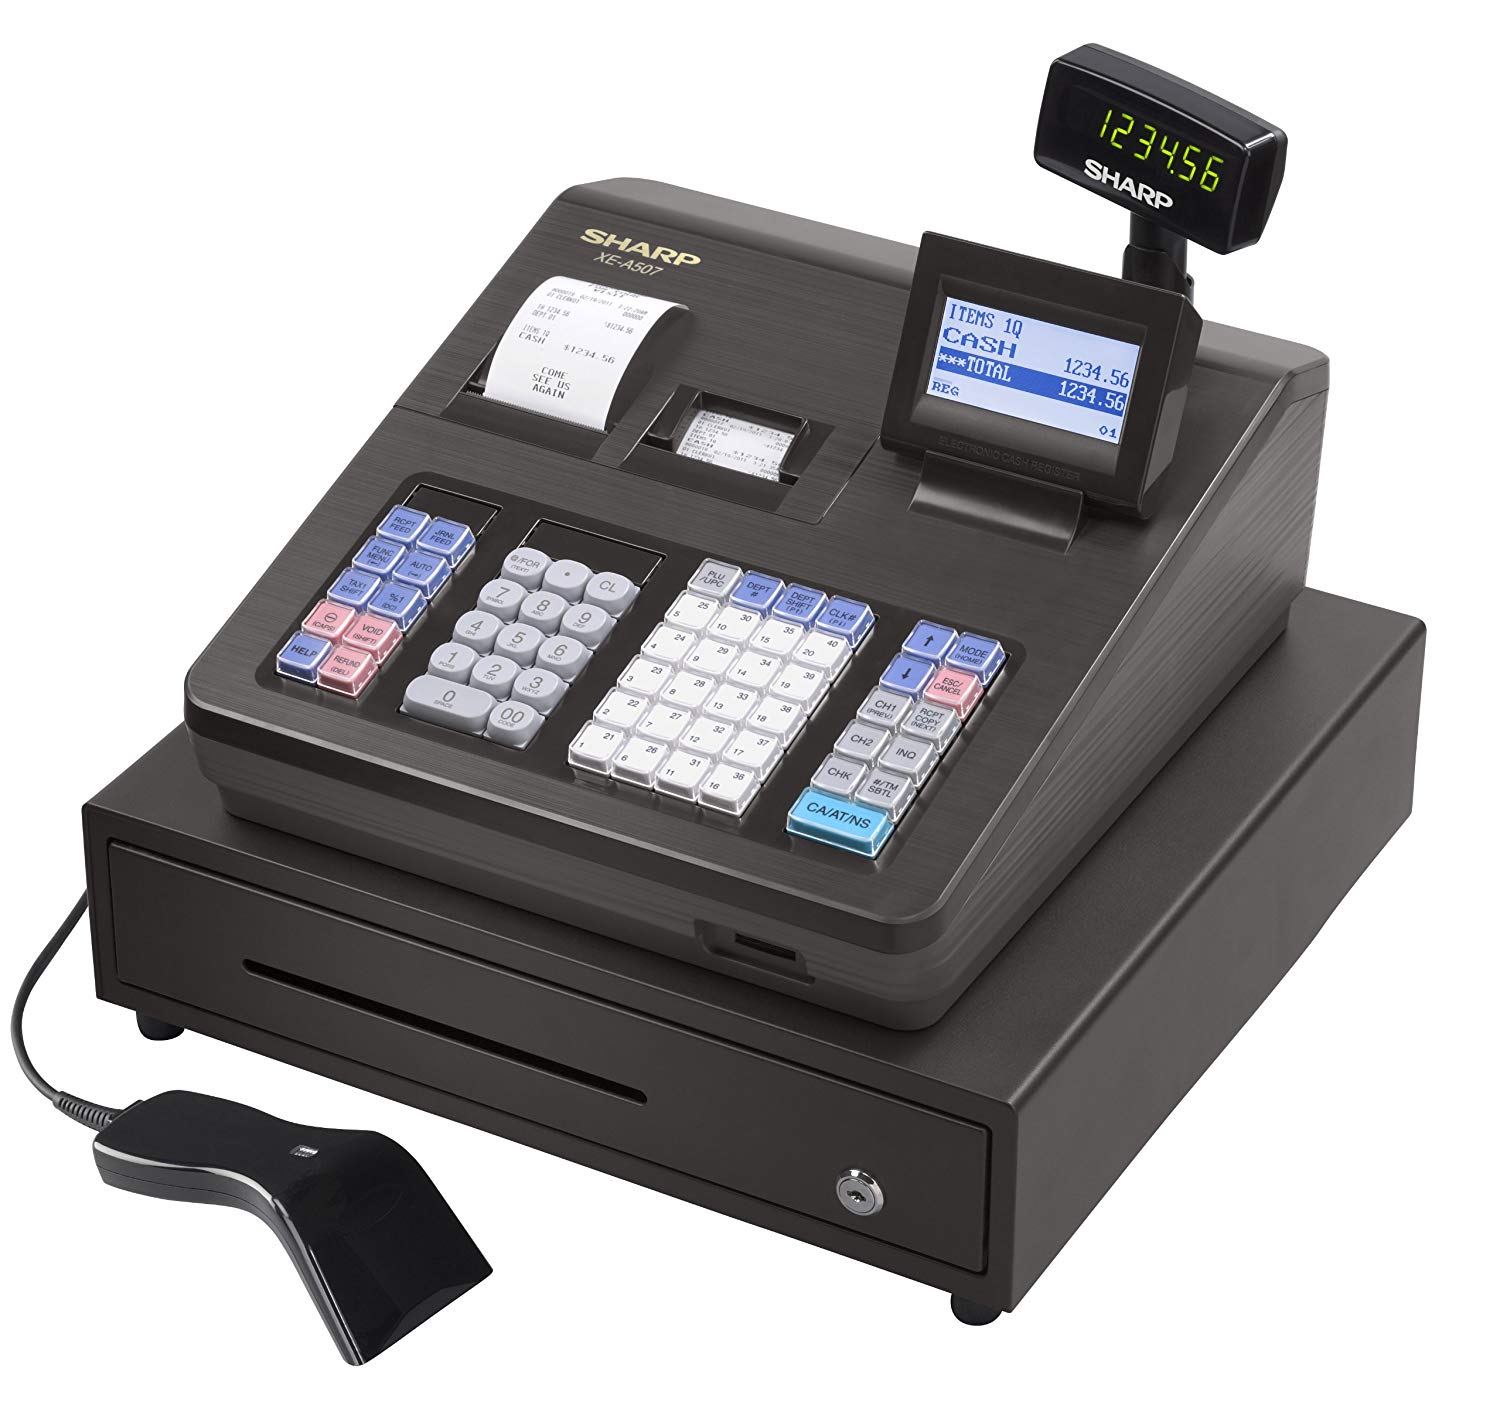 Best Barcode Scanner For Cash Register